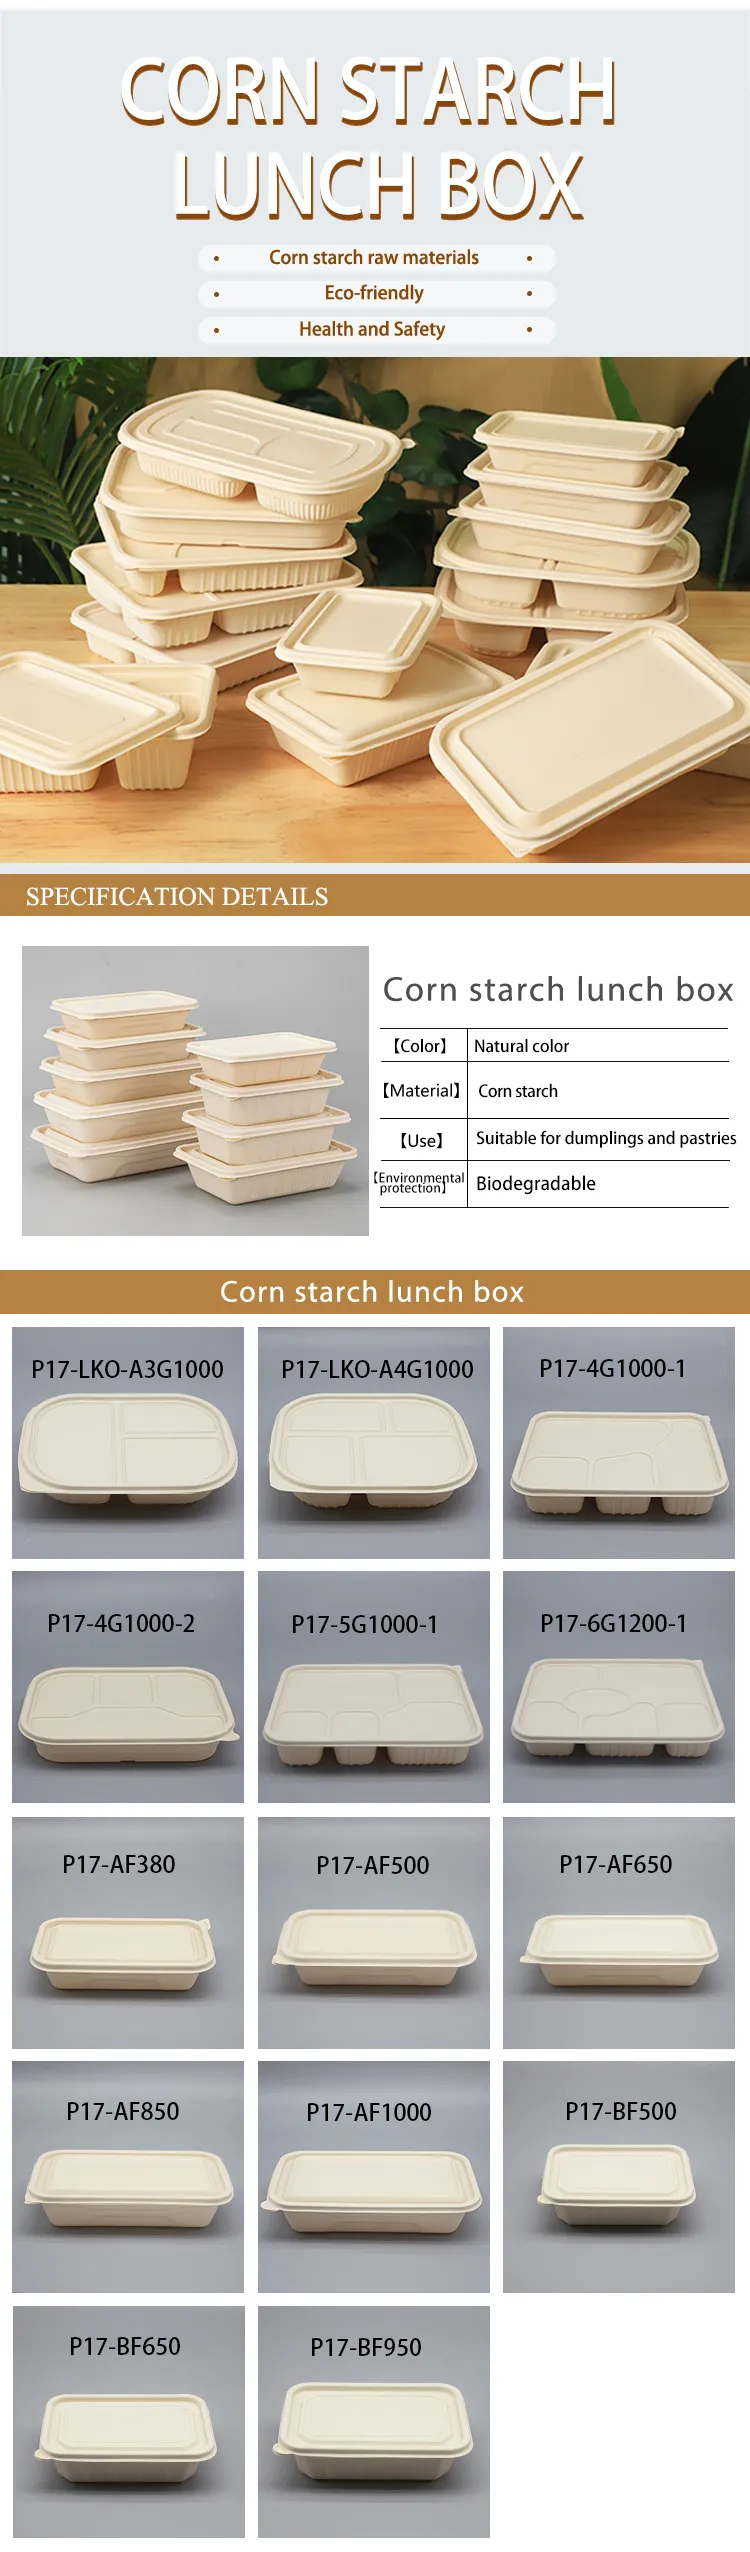 LOKYO 3 caja ambiental biodegradable de la comida del almuerzo del almidón de maíz de 4 5 del compartimiento envases de la caja de embalaje